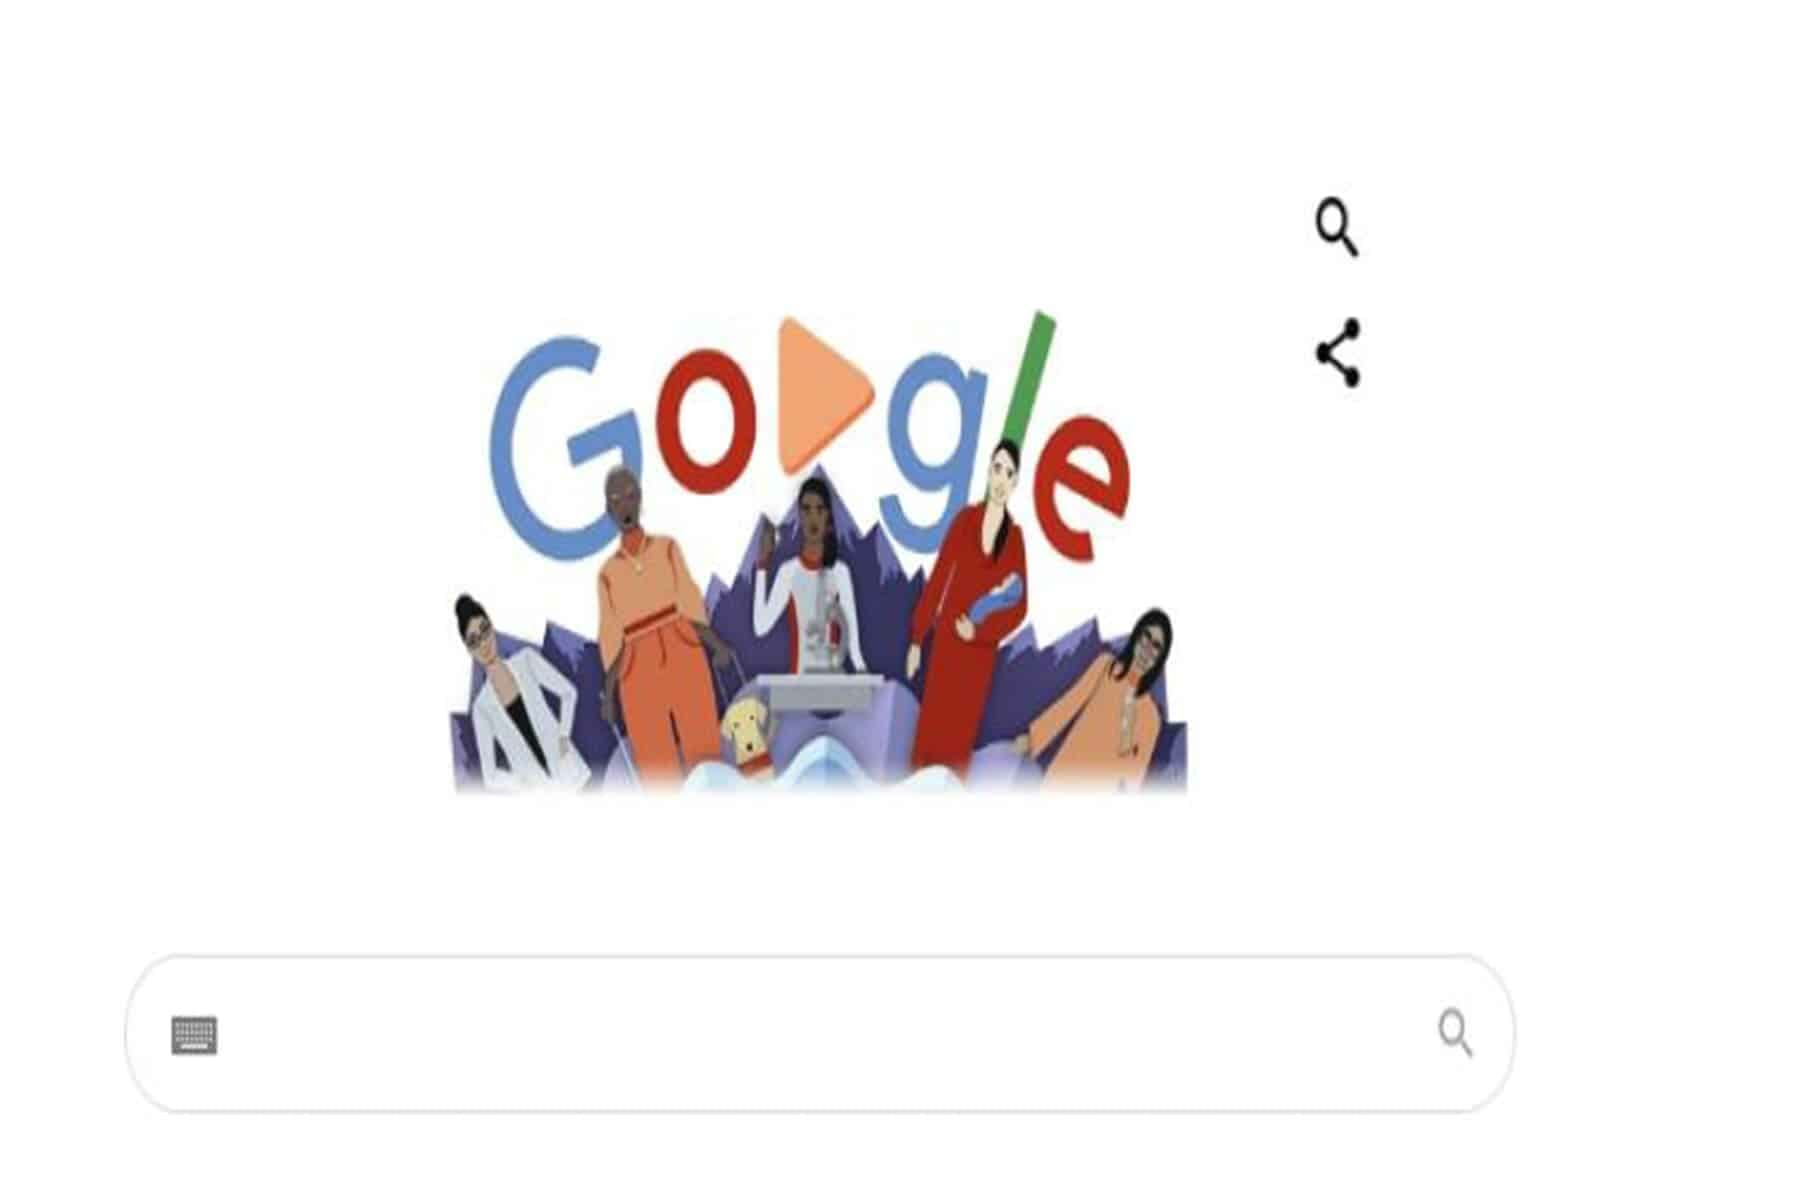 جوجل تحتفل في اليوم العالمي للمرأة watanserb.com